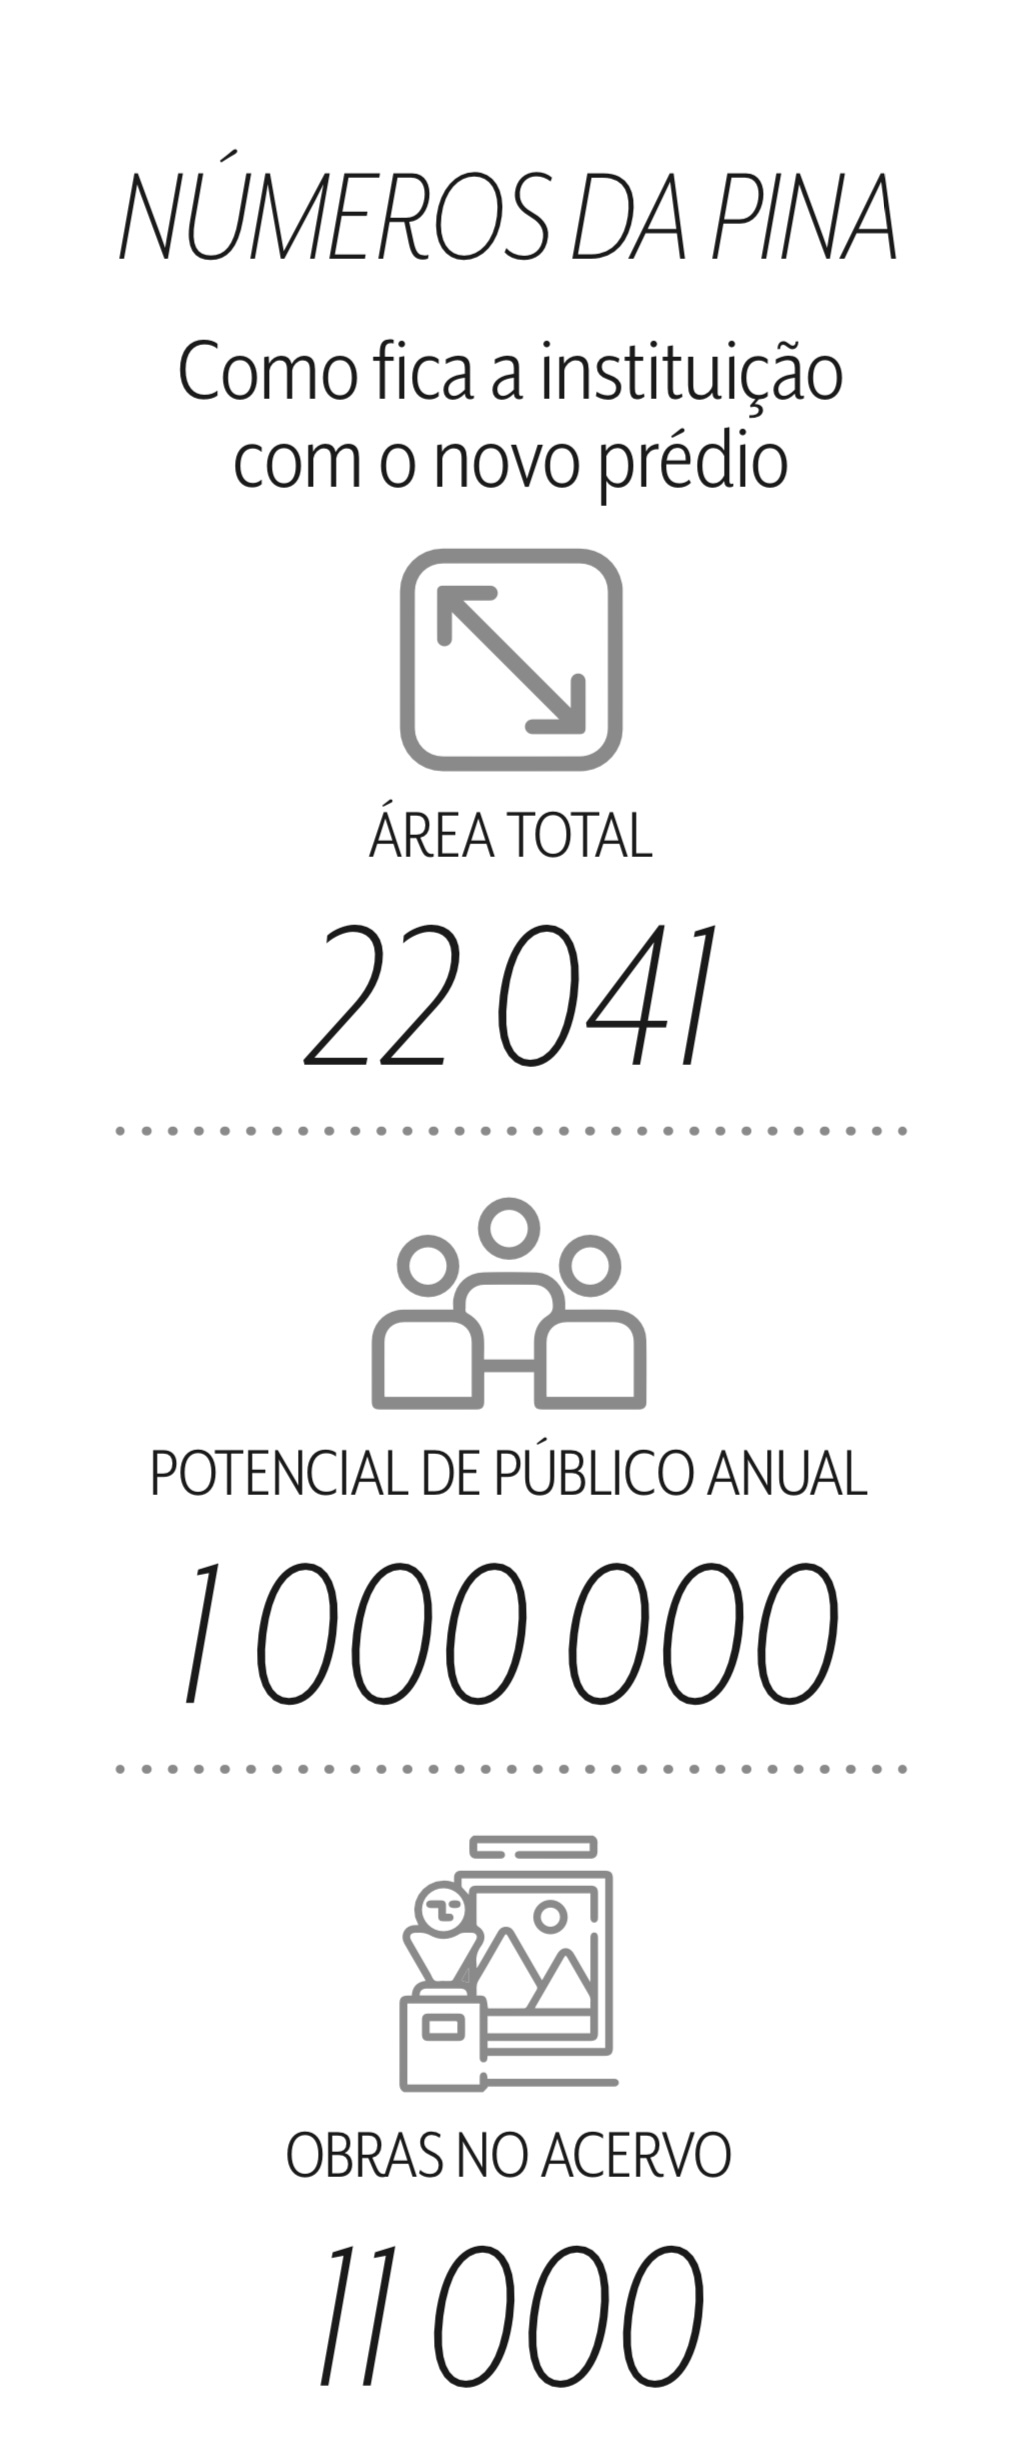 Imagem mostra números da Pinacoteca.